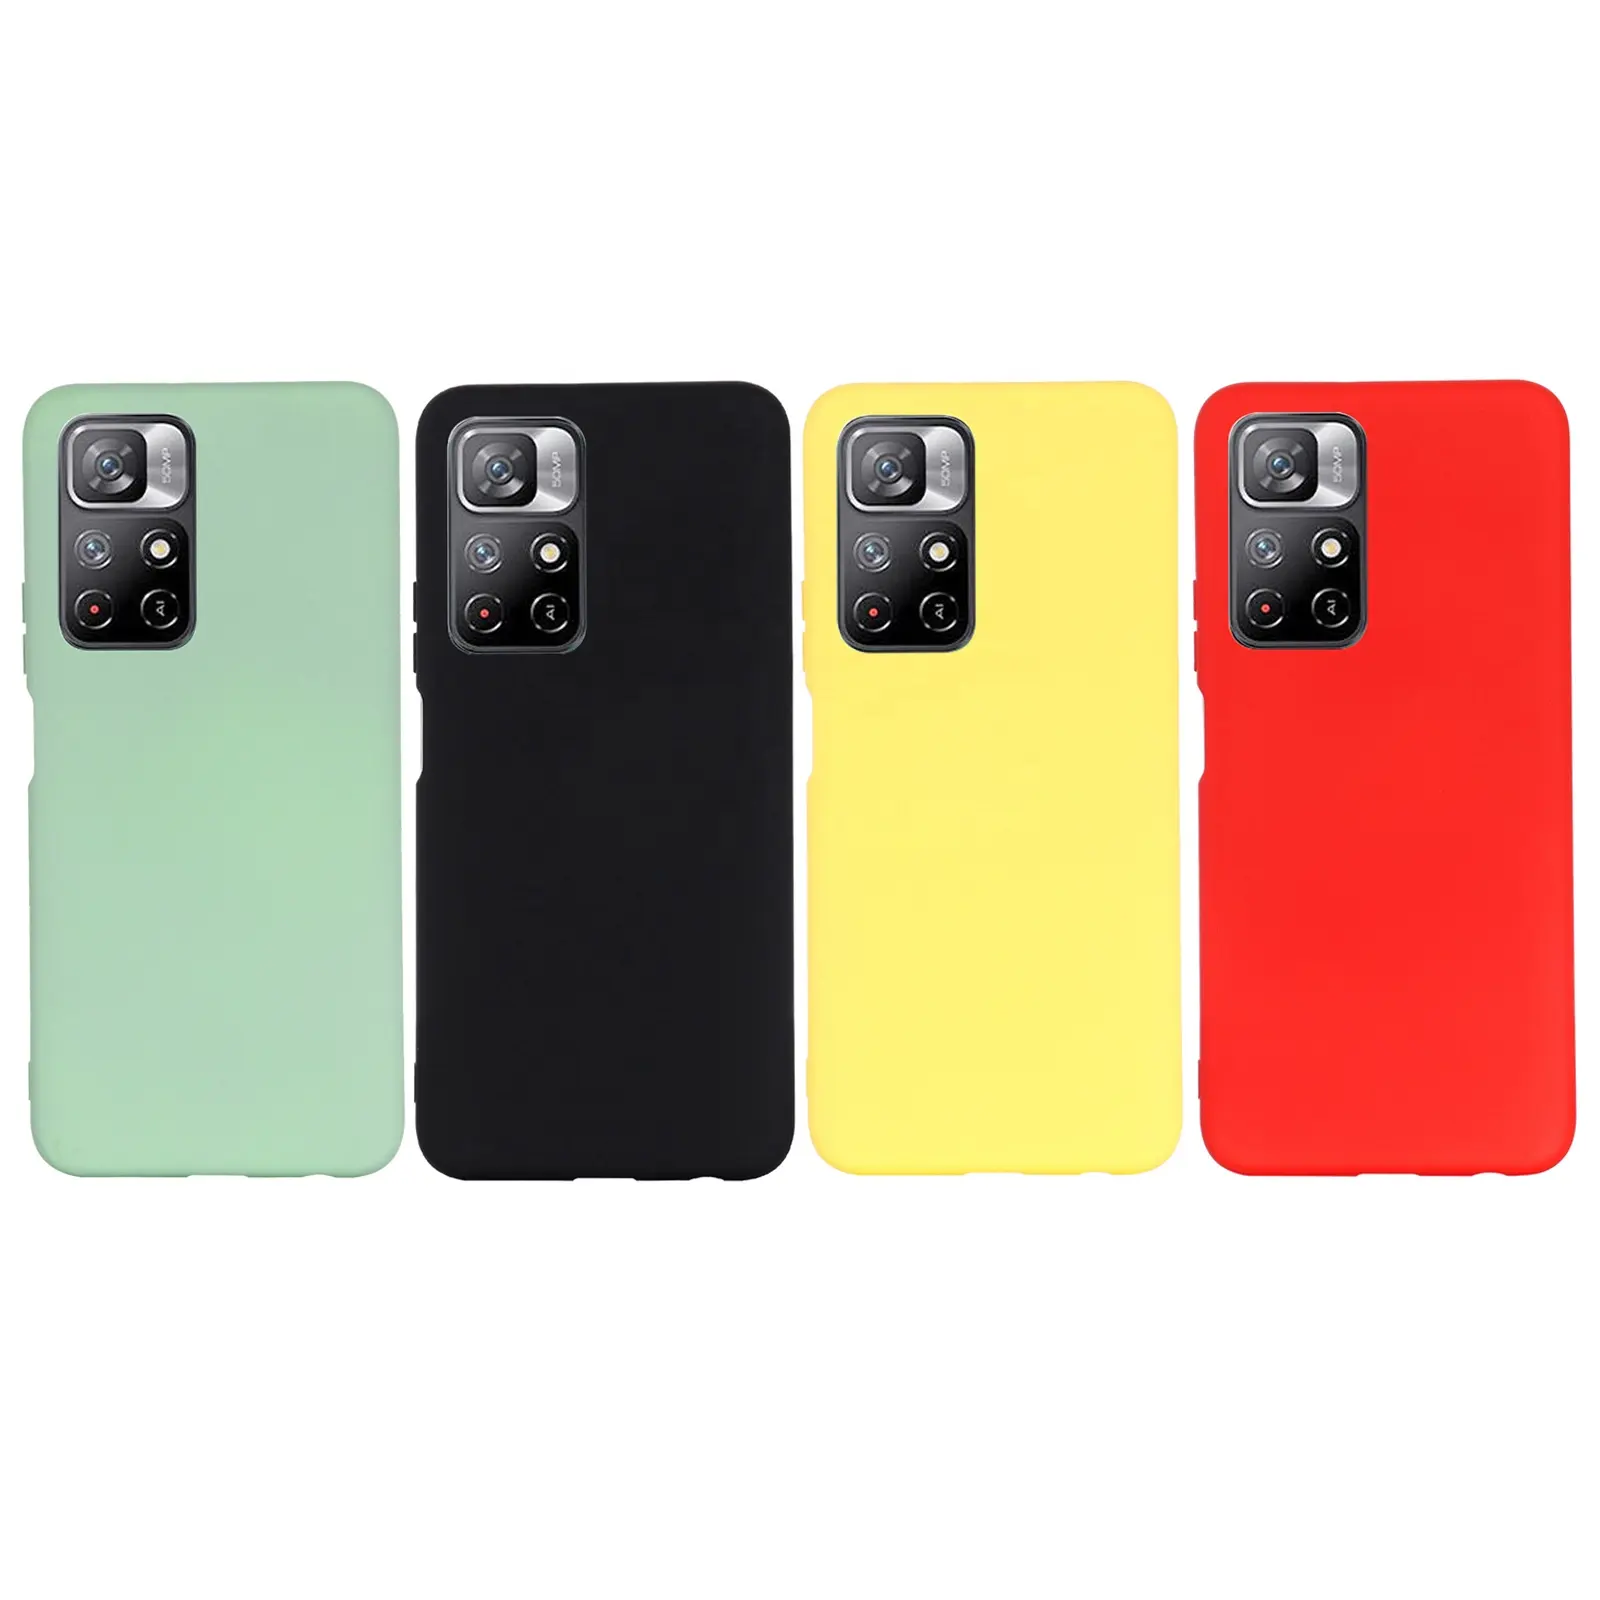 Silicone Mobile Phone rubber protective case cover for xiaomi pocophone Poco F1 F2 F3 X3 NFC C3 M2 M3 Pro 5G Silicone case